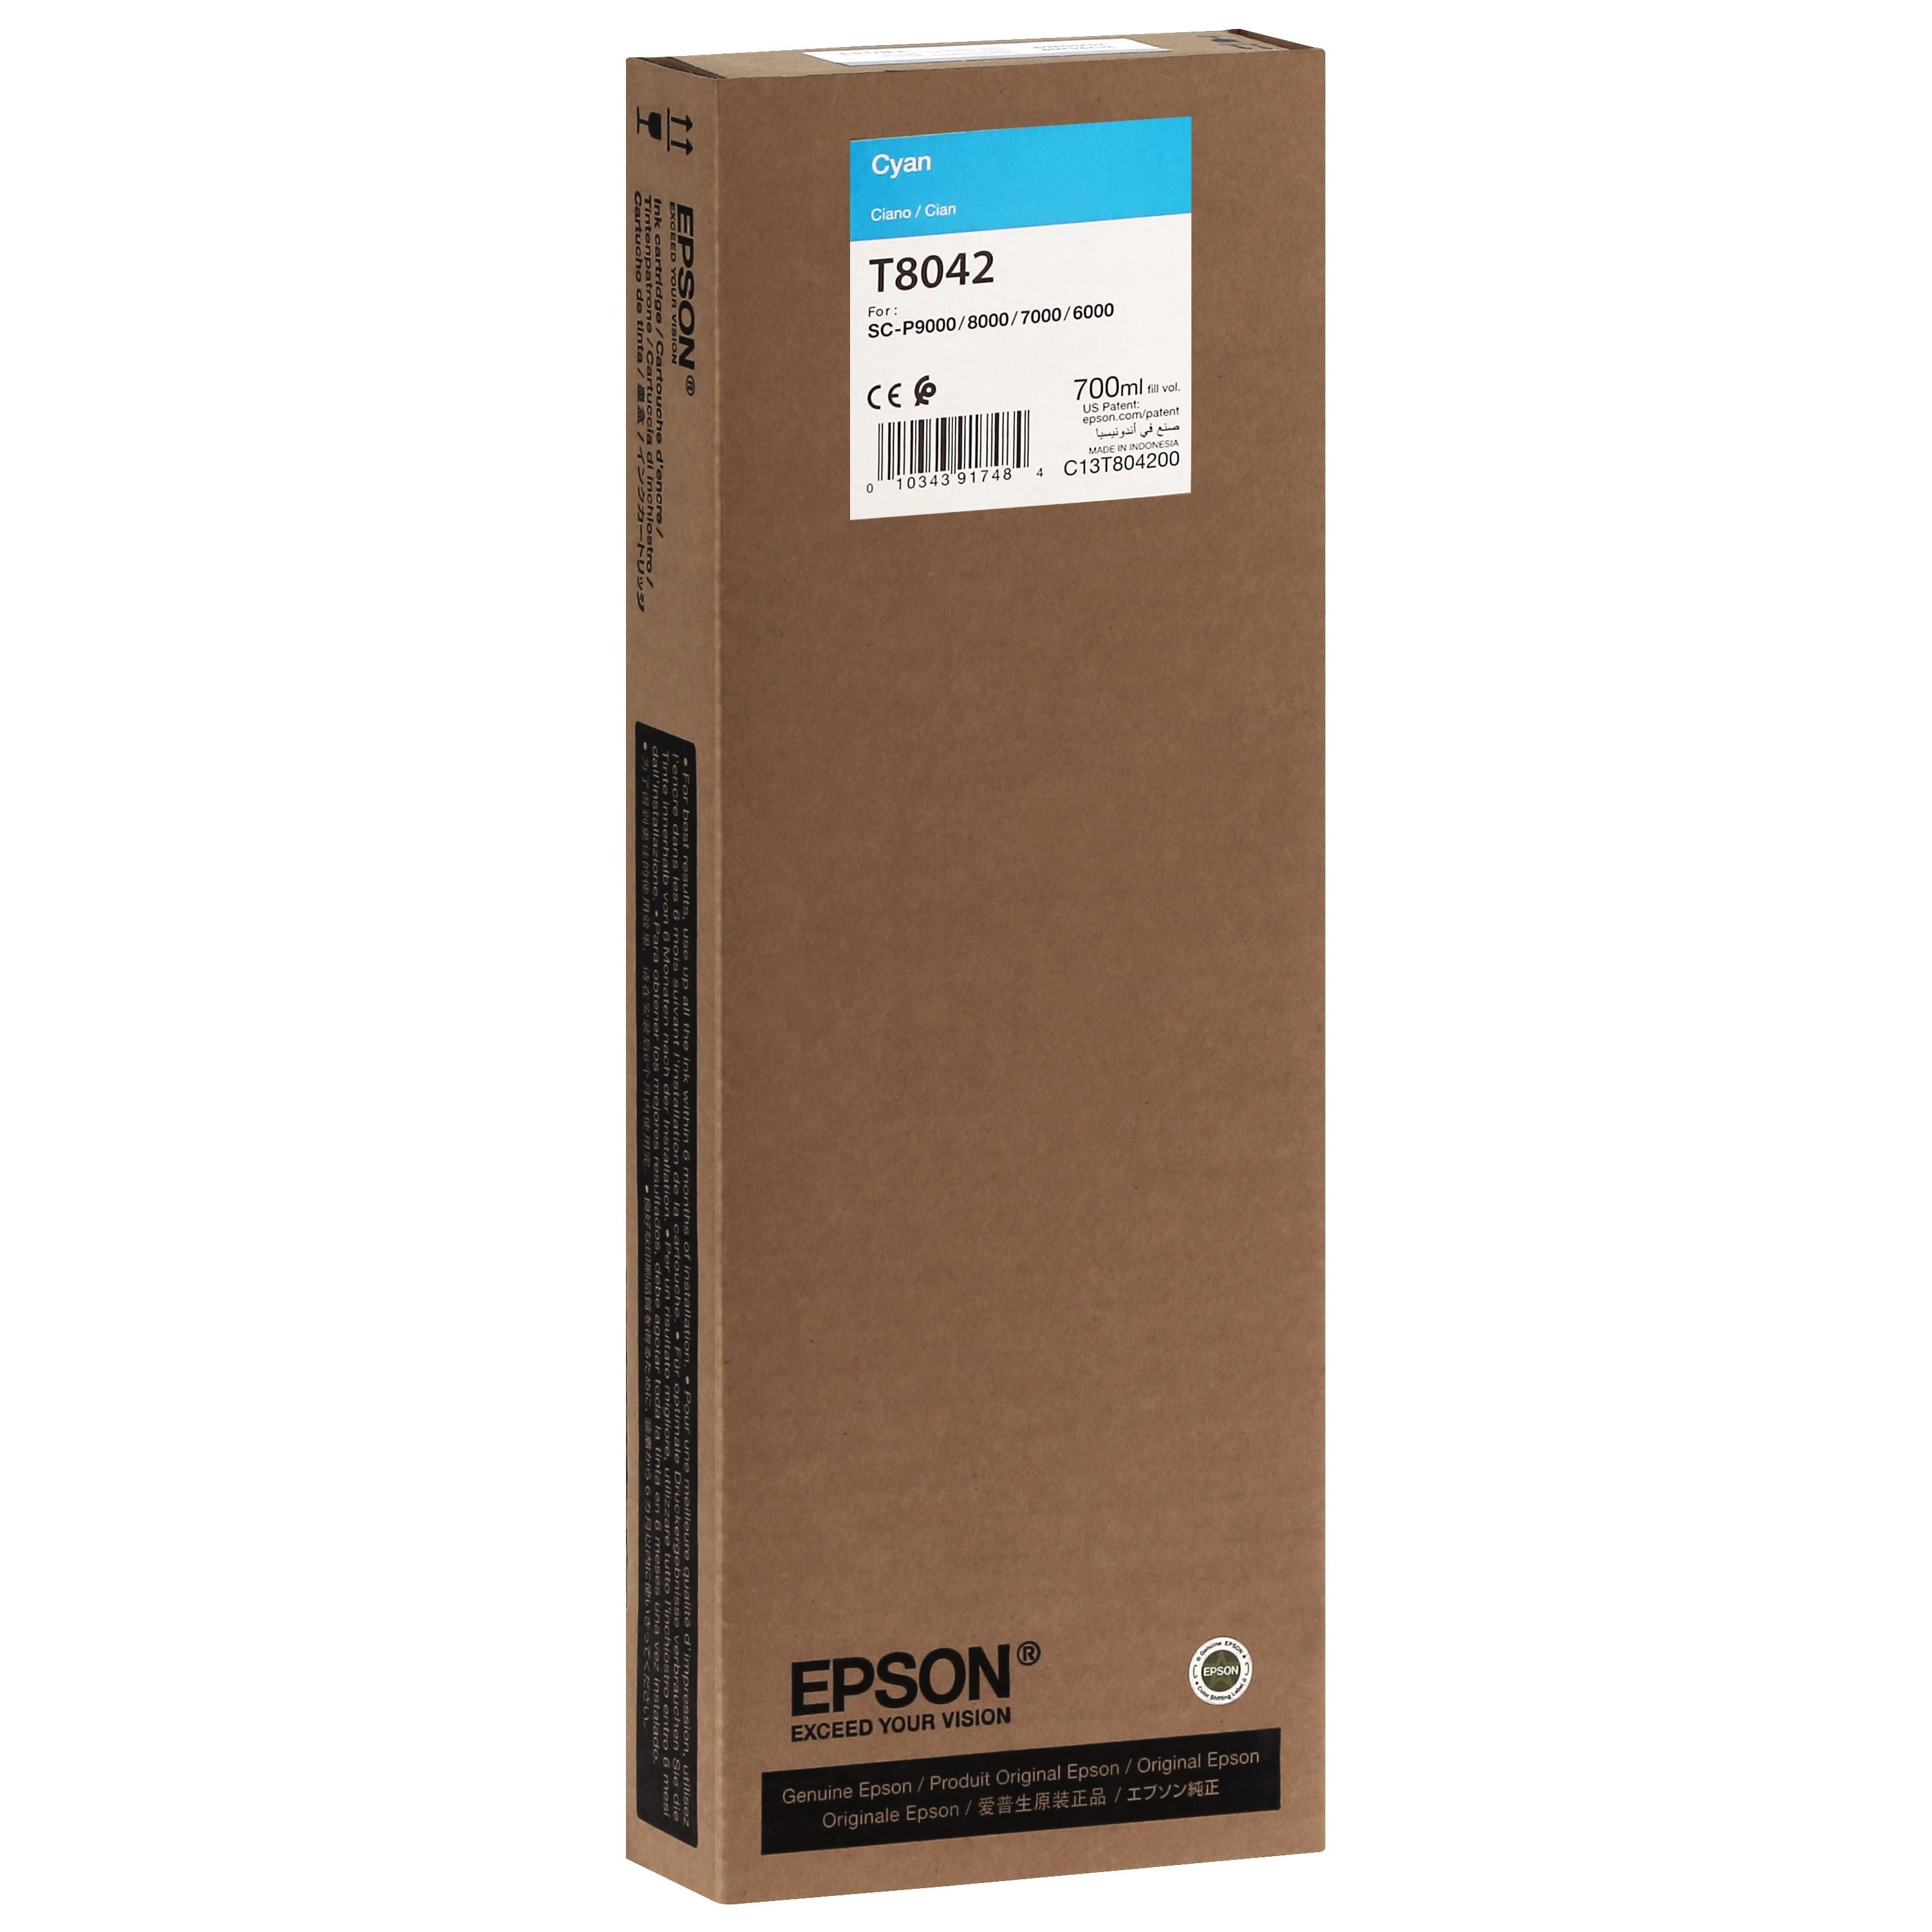 EPSON - Cartouche d'encre traceur T8042 Pour imprimante SC-P6000/7000/7000V/8000/9000/9000V Cyan - 700ml